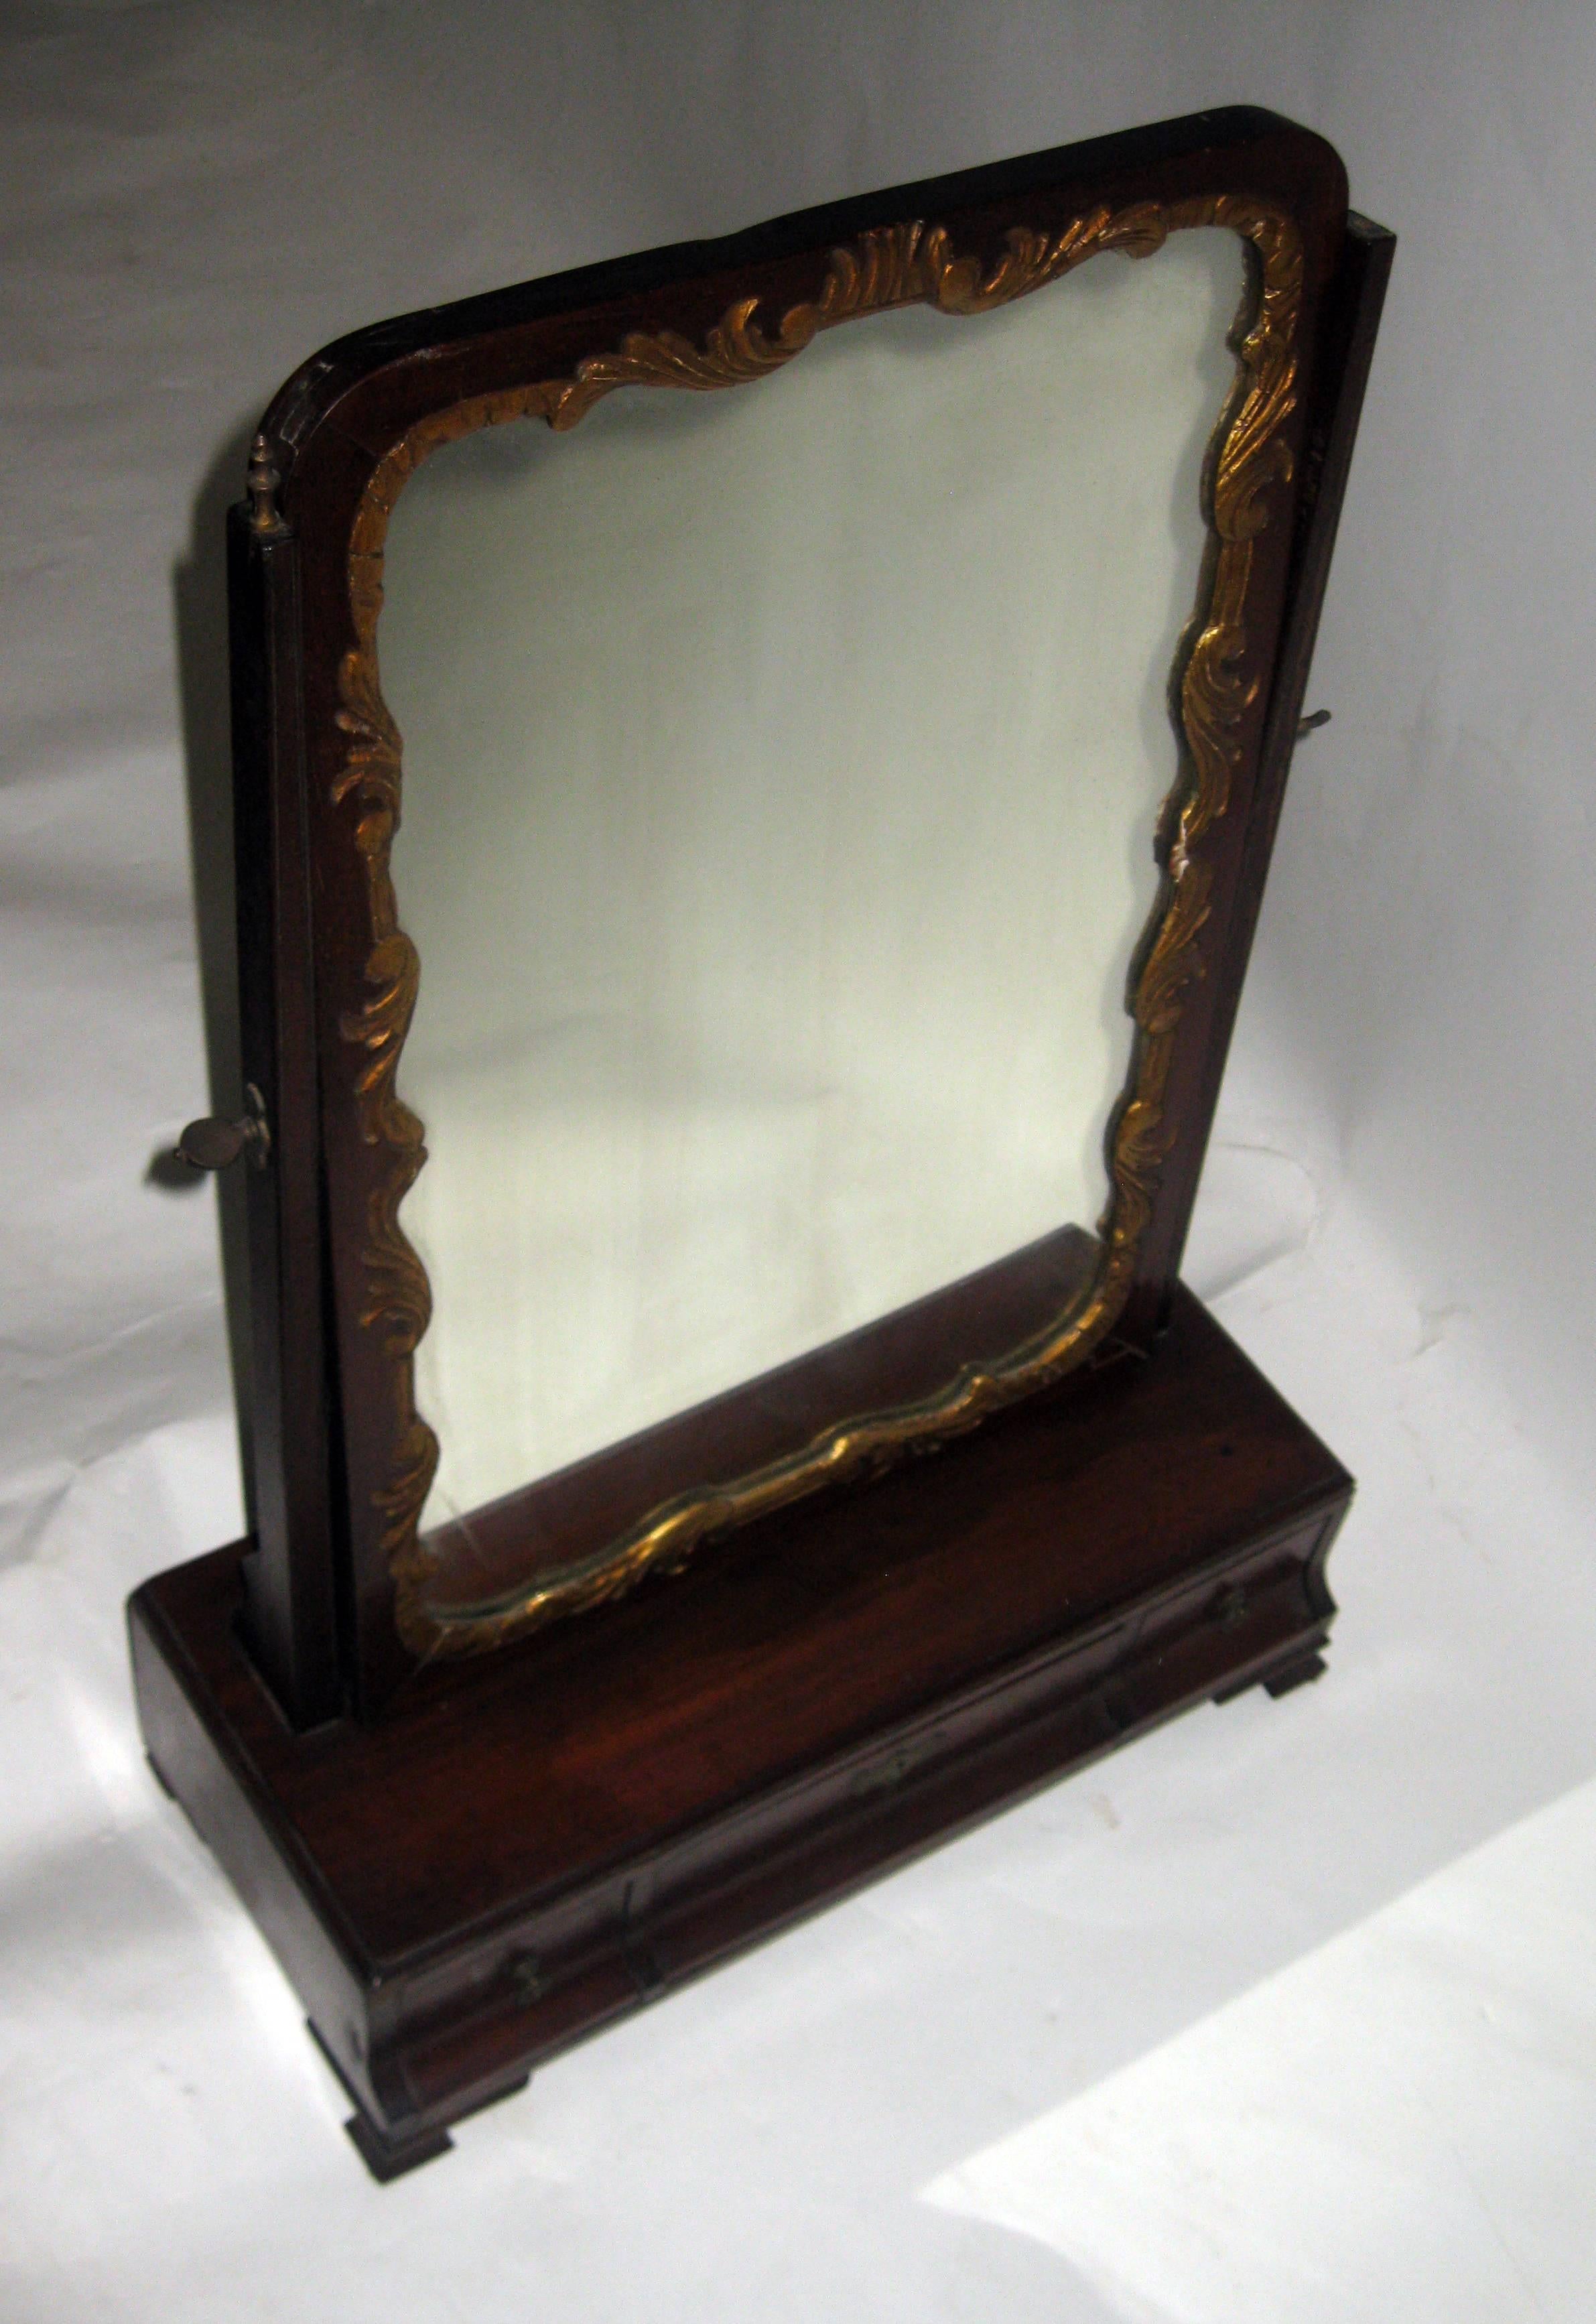 Miroir de coiffure ou de rasage en acajou de style géorgien du 19e siècle, avec quincaillerie d'origine en laiton, trois tiroirs et des pieds à consoles en ogive. Un cadre en bois doré sculpté de façon fantaisiste entoure le miroir pivotant qui a un